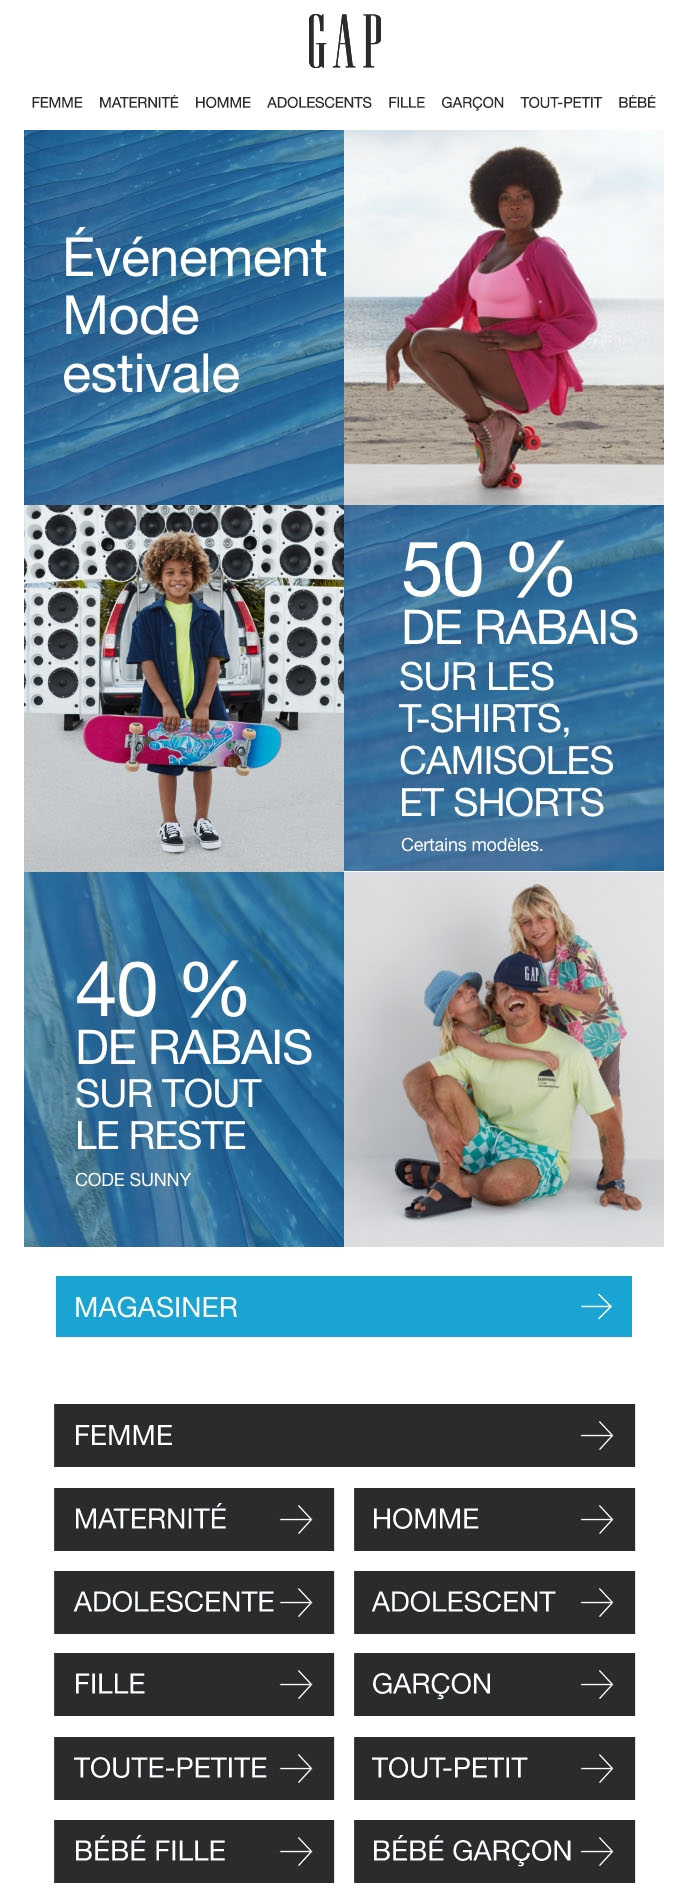 40 % de Rabais sur tout + 50 % de Rabais sur les Favoris de l’Été + SENSATION DE LA NOUVELLE ROBE (POUR FAIRE SENSATION!)